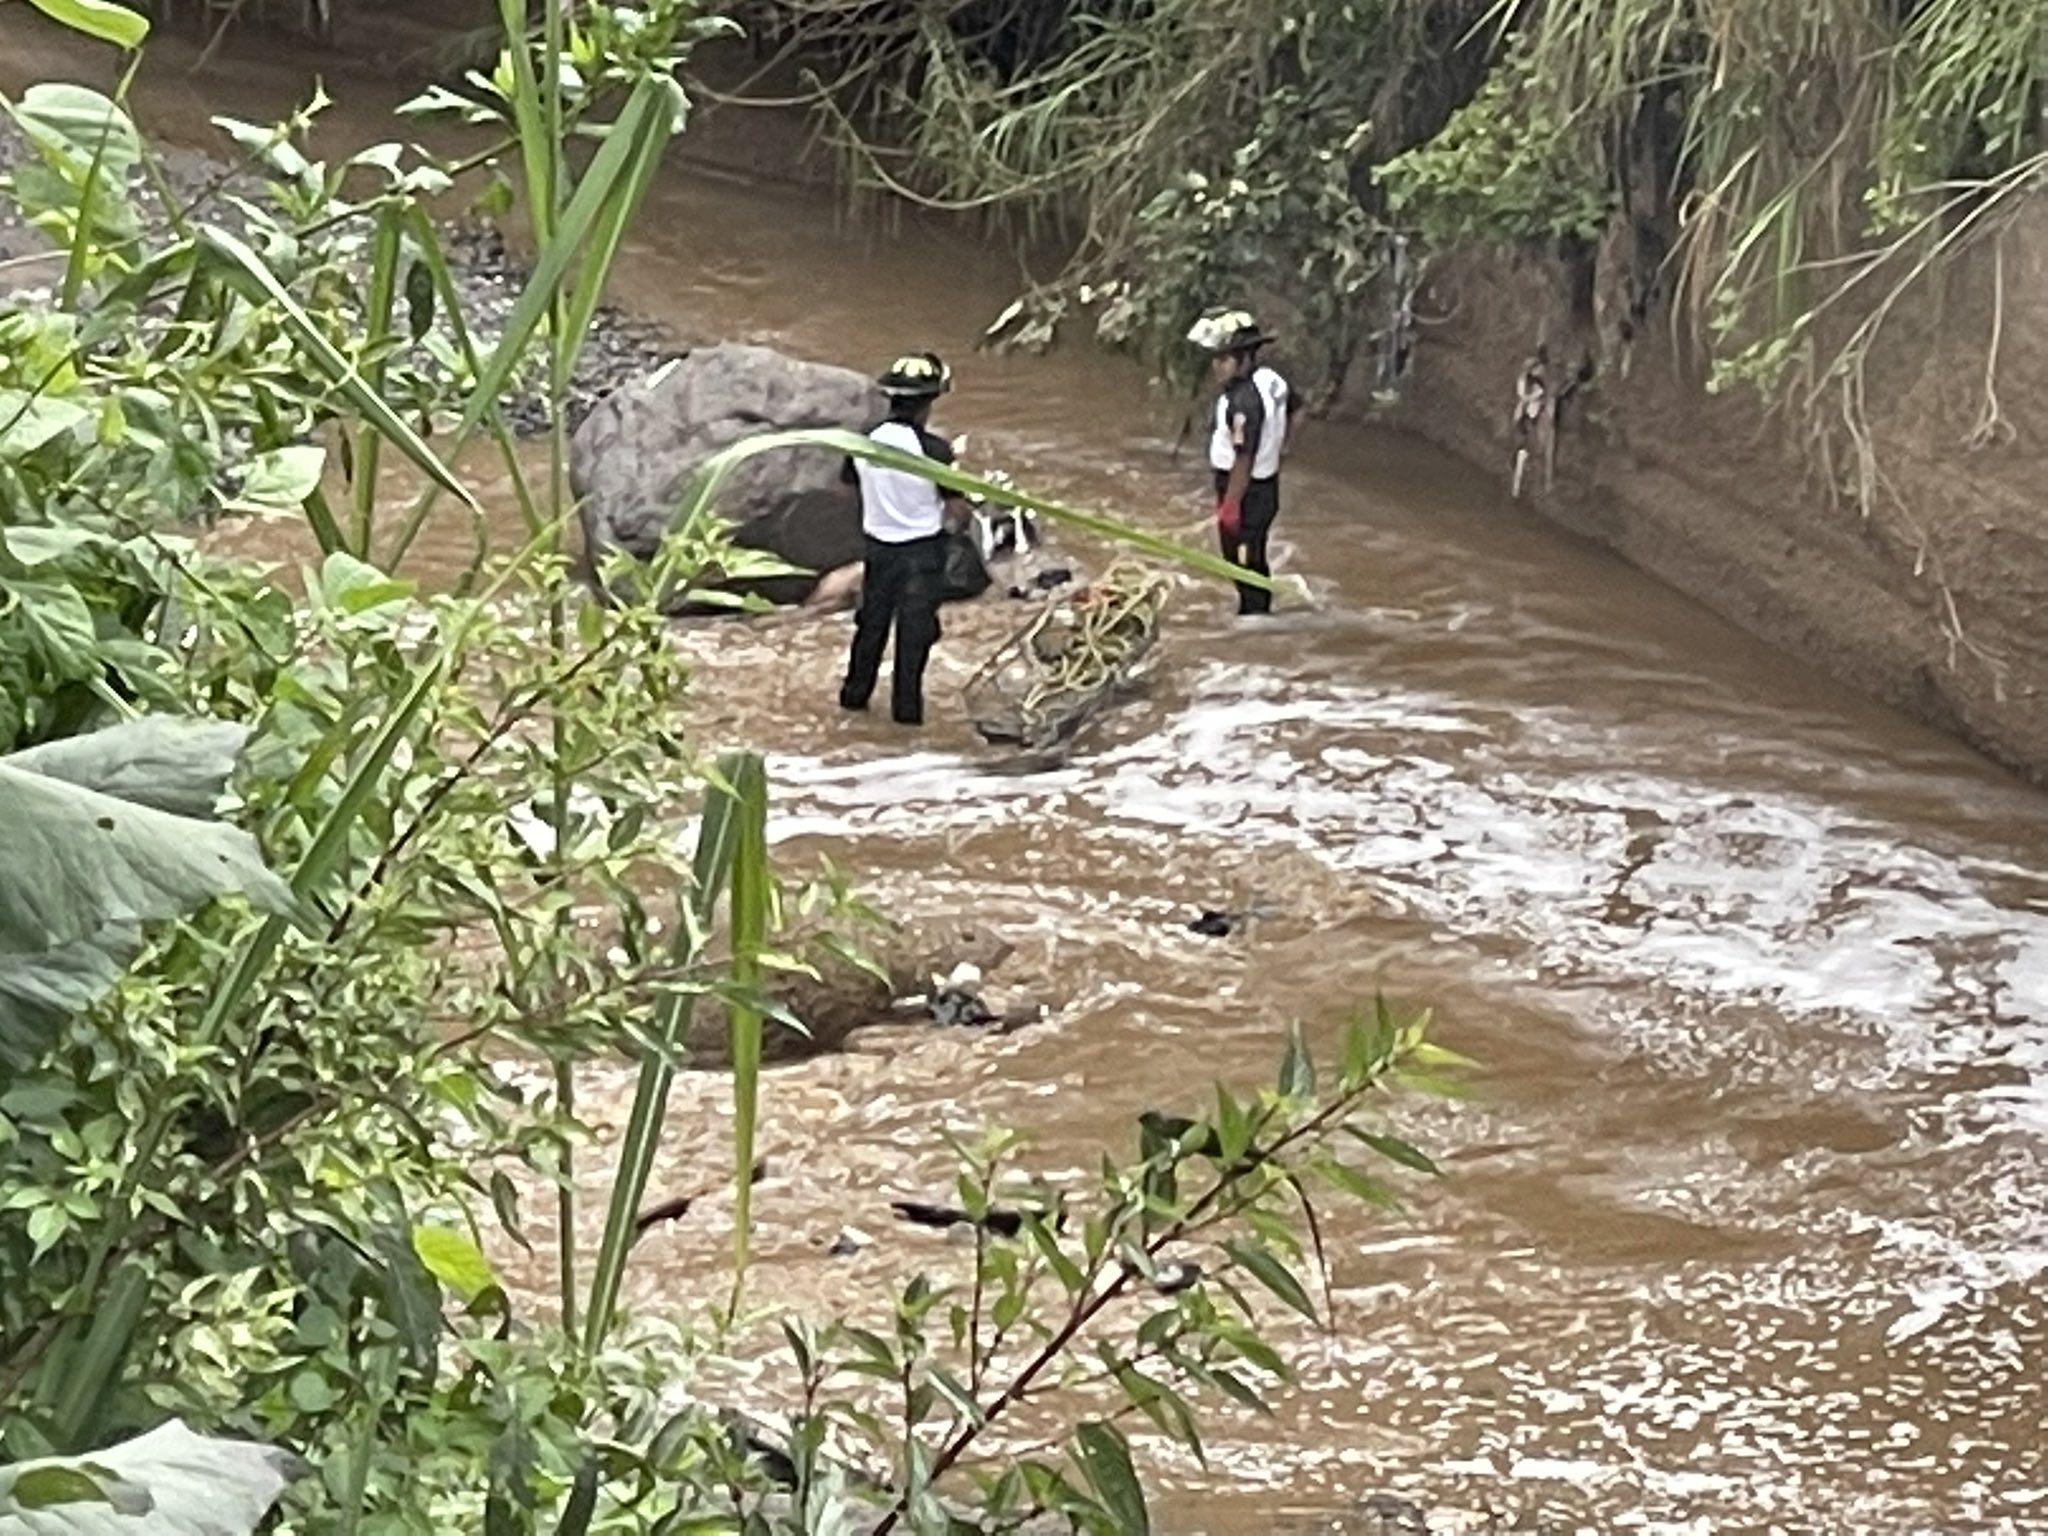 El cadáver de una persona fue hallado en el río Villalobos por socorristas. (Foto Prensa Libre: Bomberos Voluntarios)